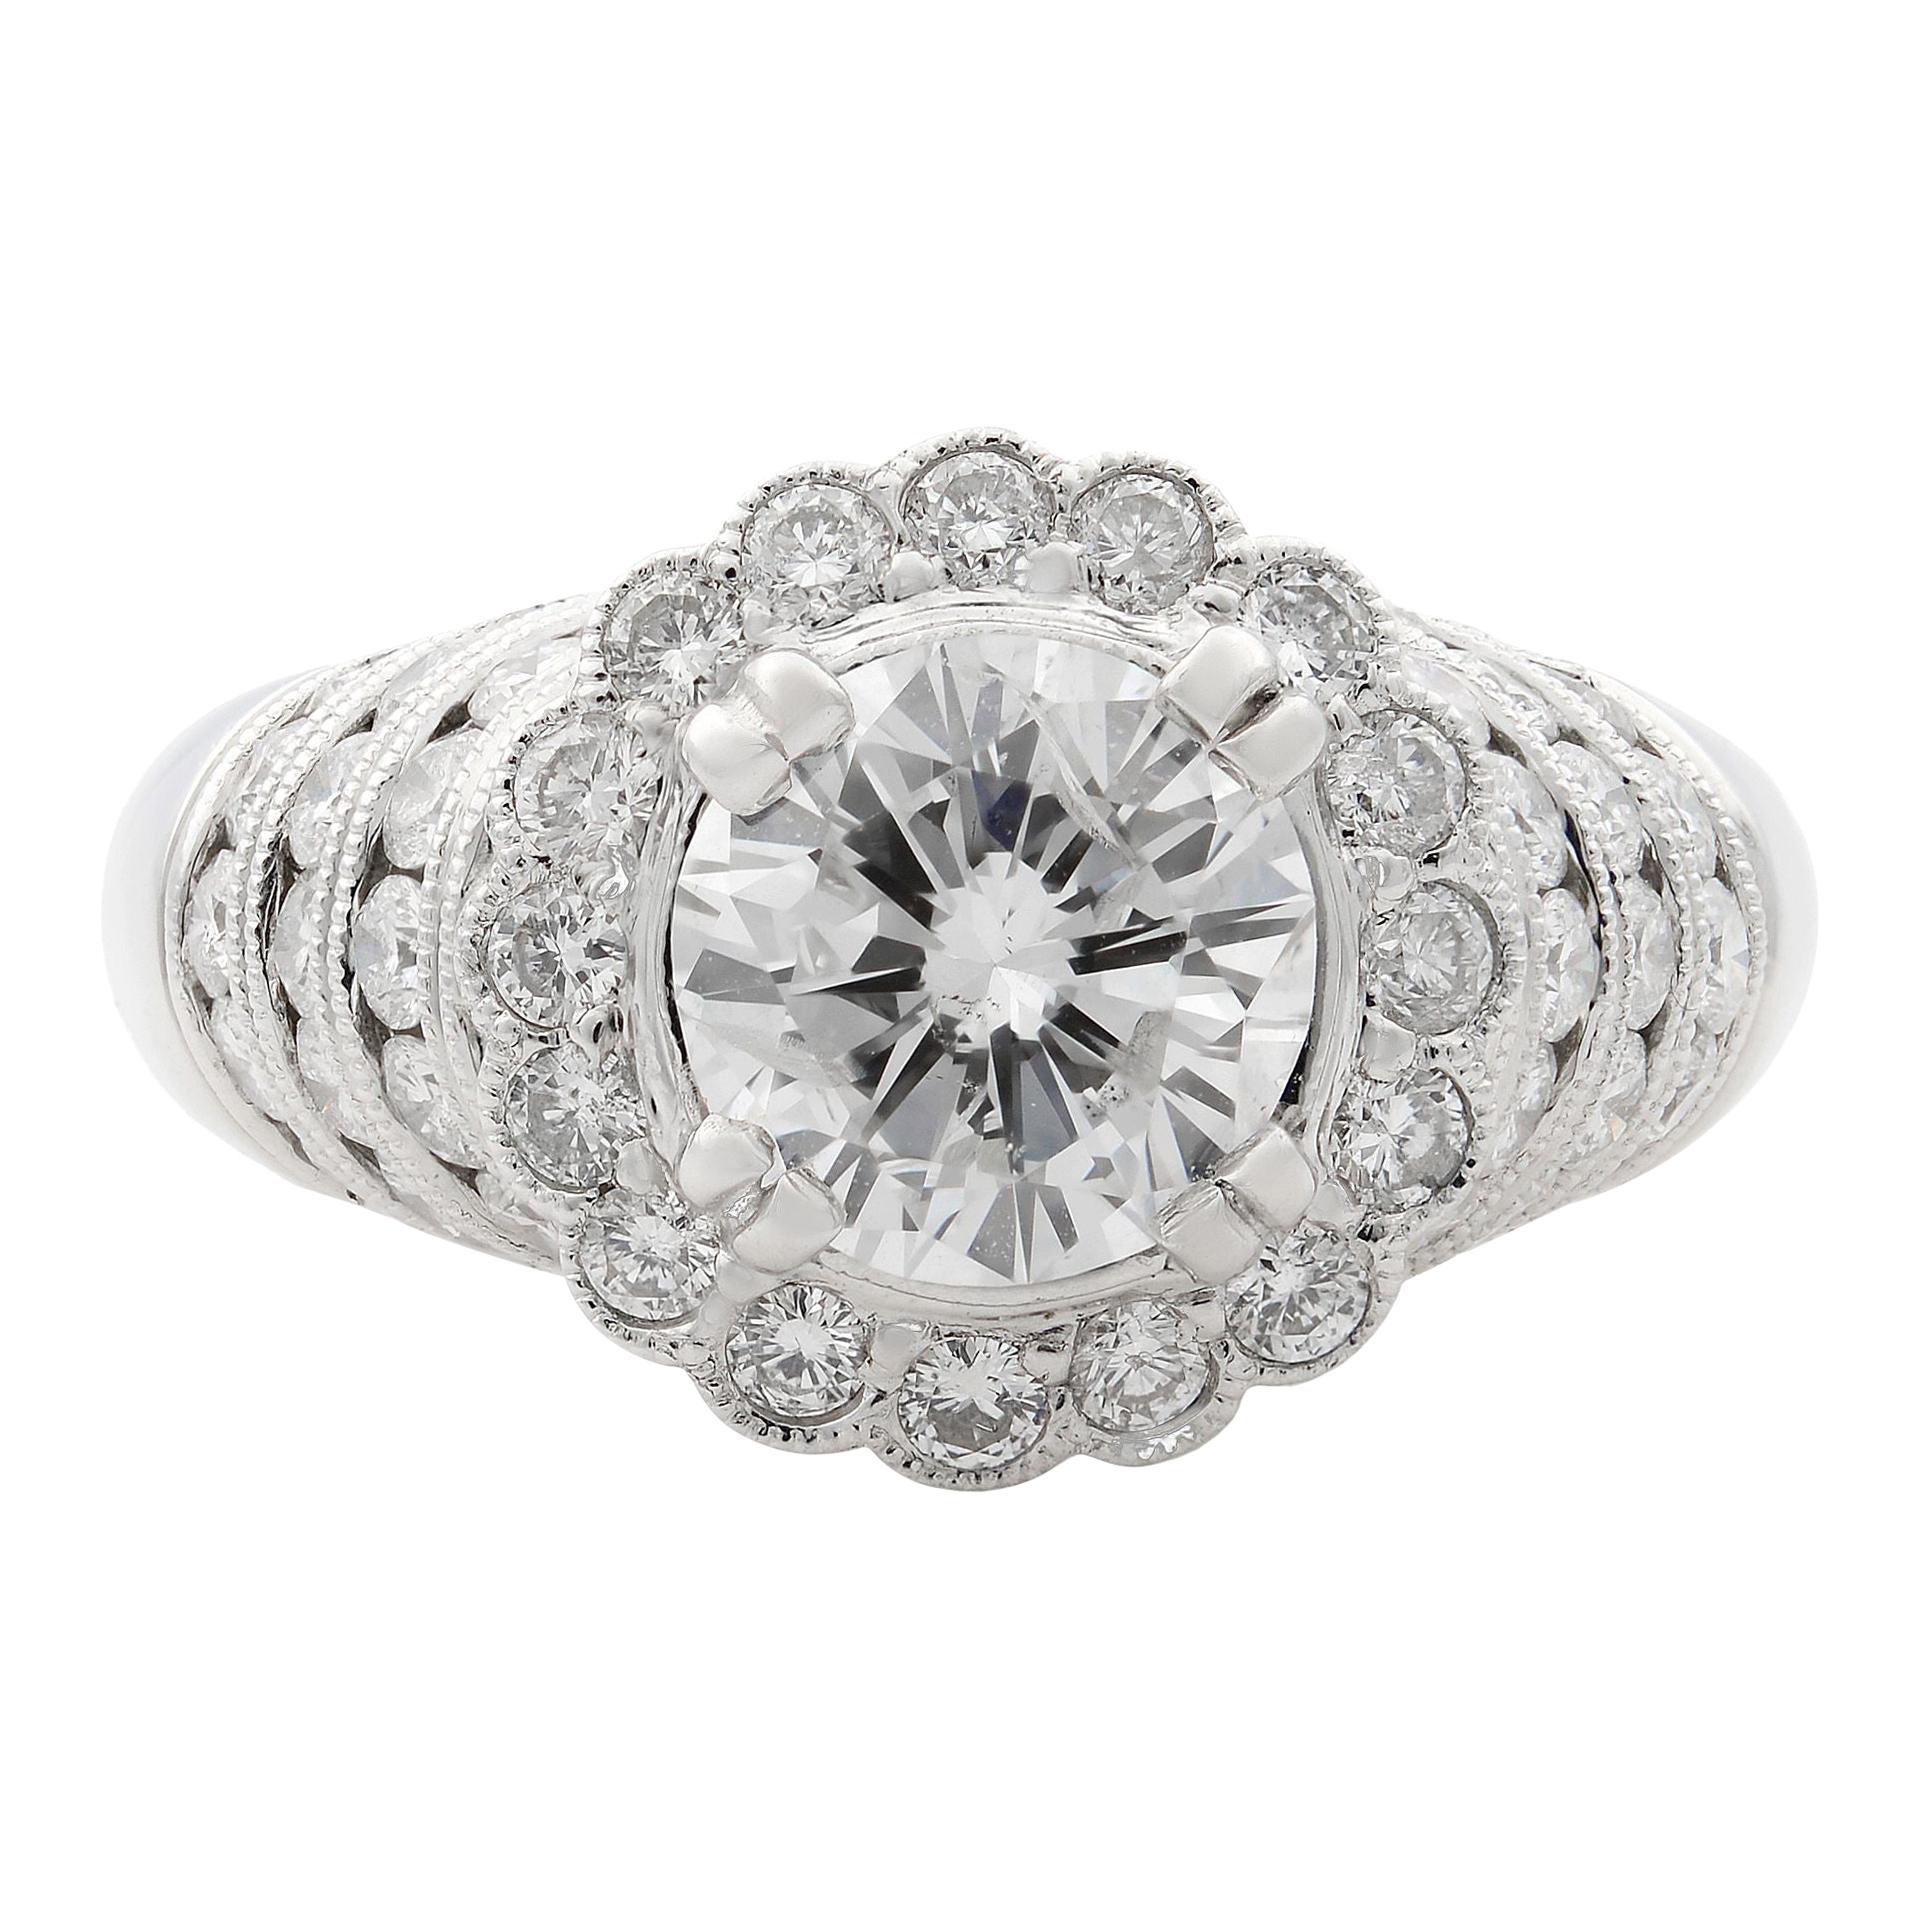 Rachel Koen 18 Karat White Gold Round Cut Diamond Engagement Ring 2.73 Carat